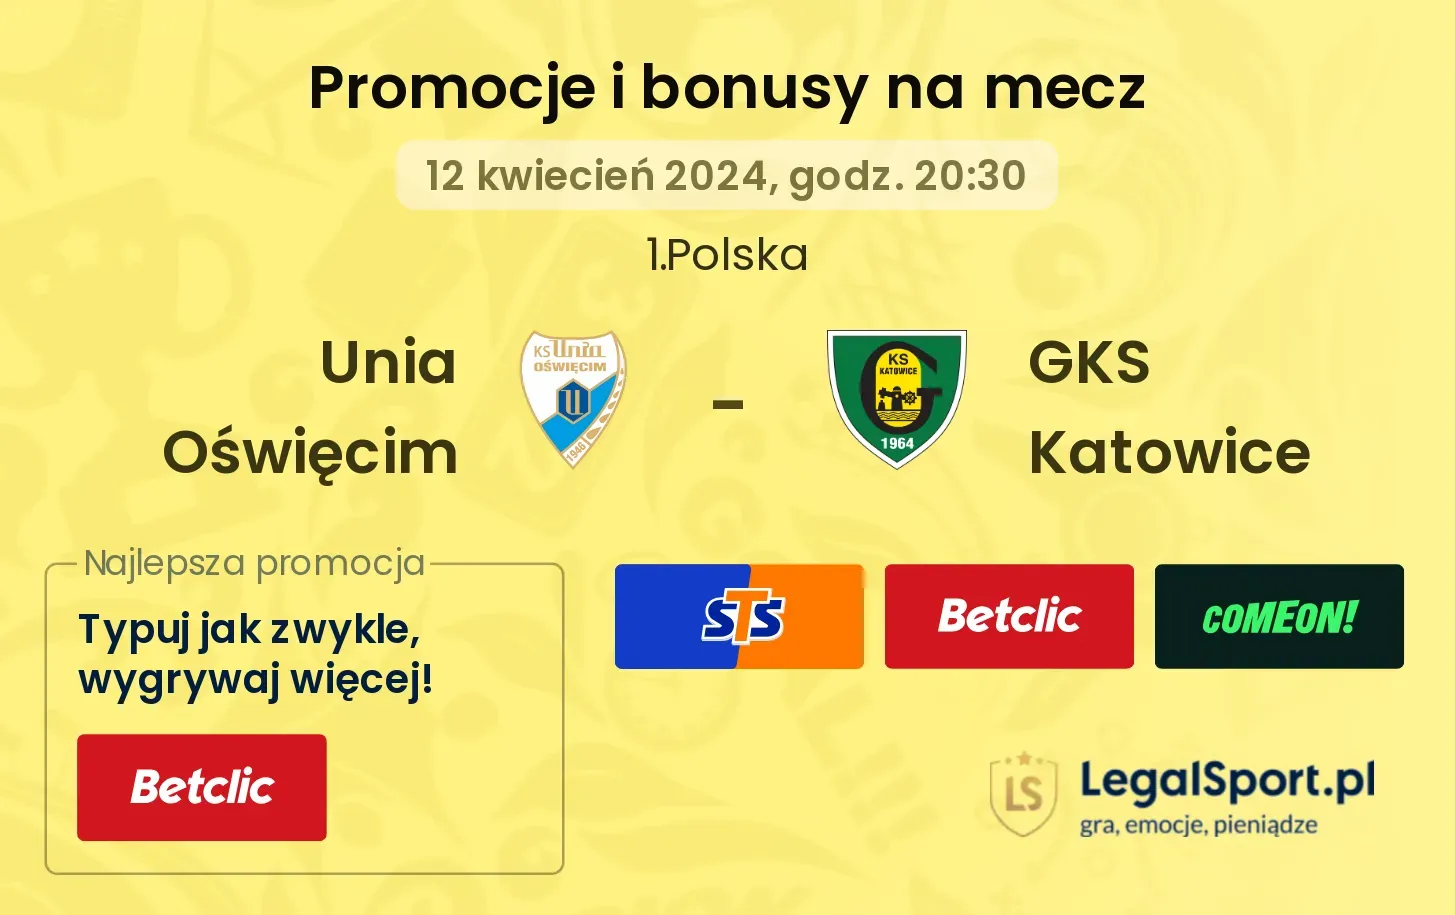 Unia Oświęcim - GKS Katowice promocje bonusy na mecz